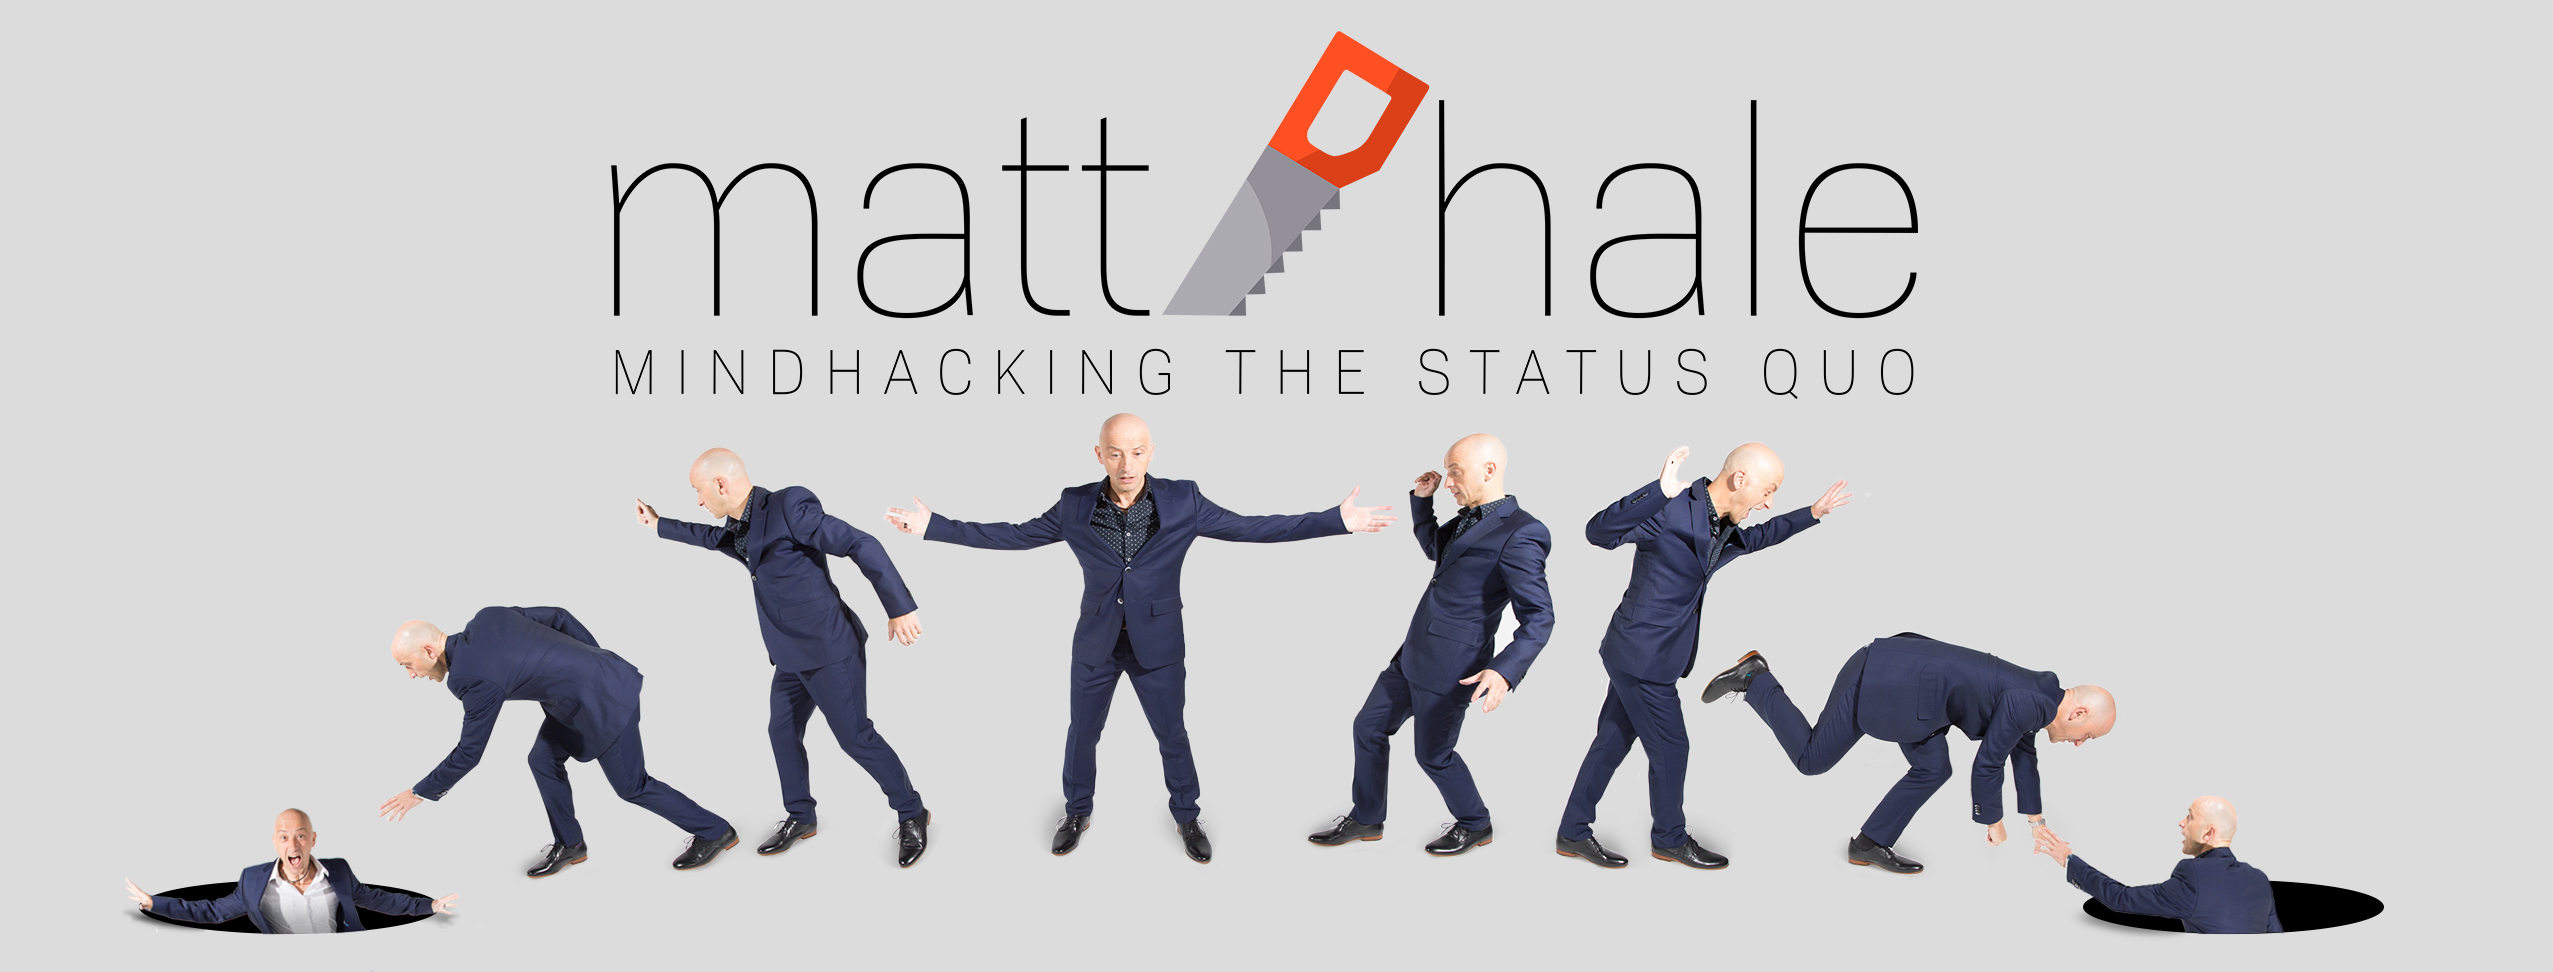 Matt Hale - Mindhacking the Status Quo - Promo Image